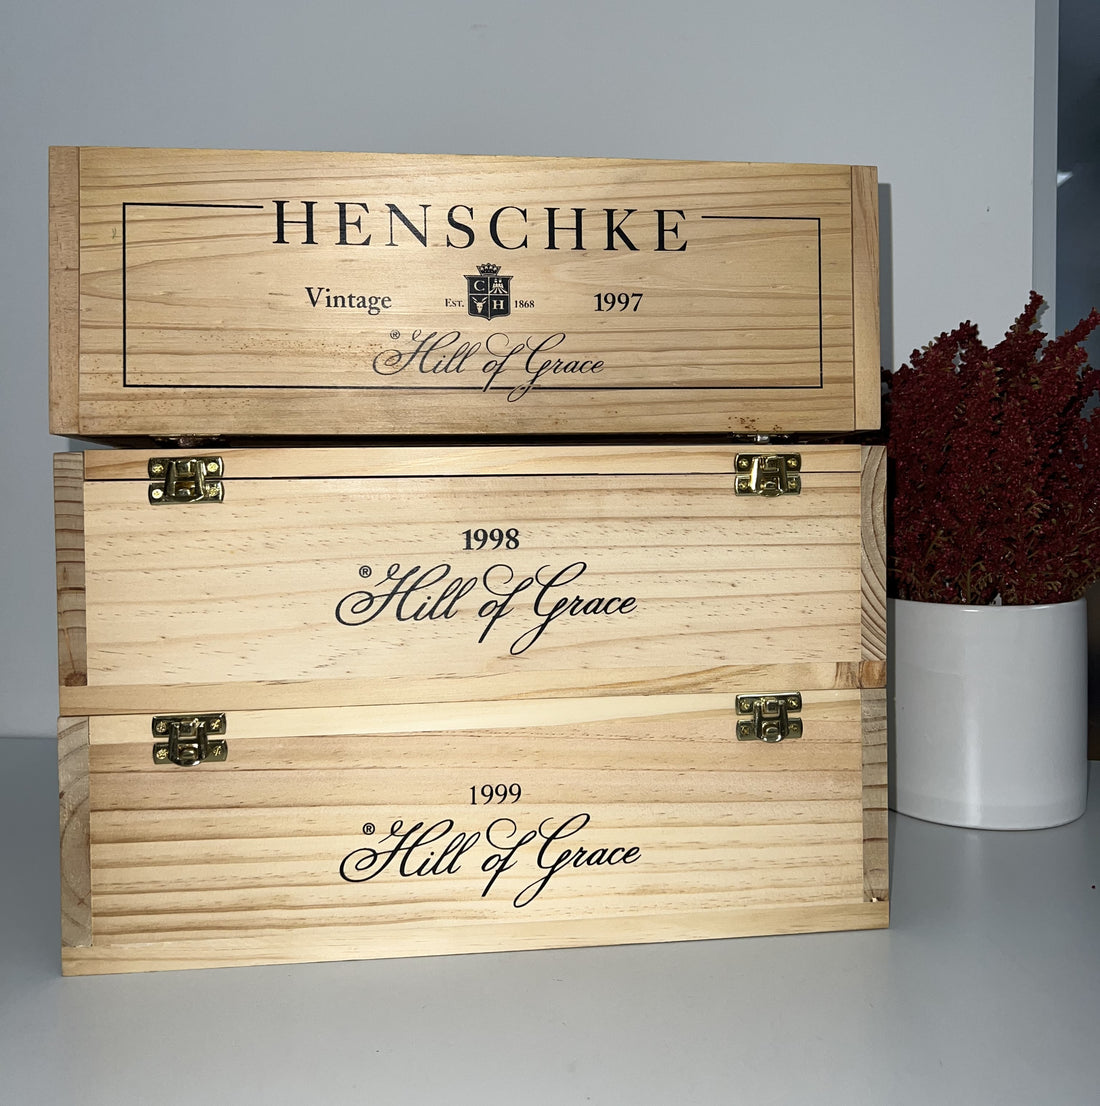 Henschke Hill of Grace: Australia's Most Esteemed Single Vineyard Wine